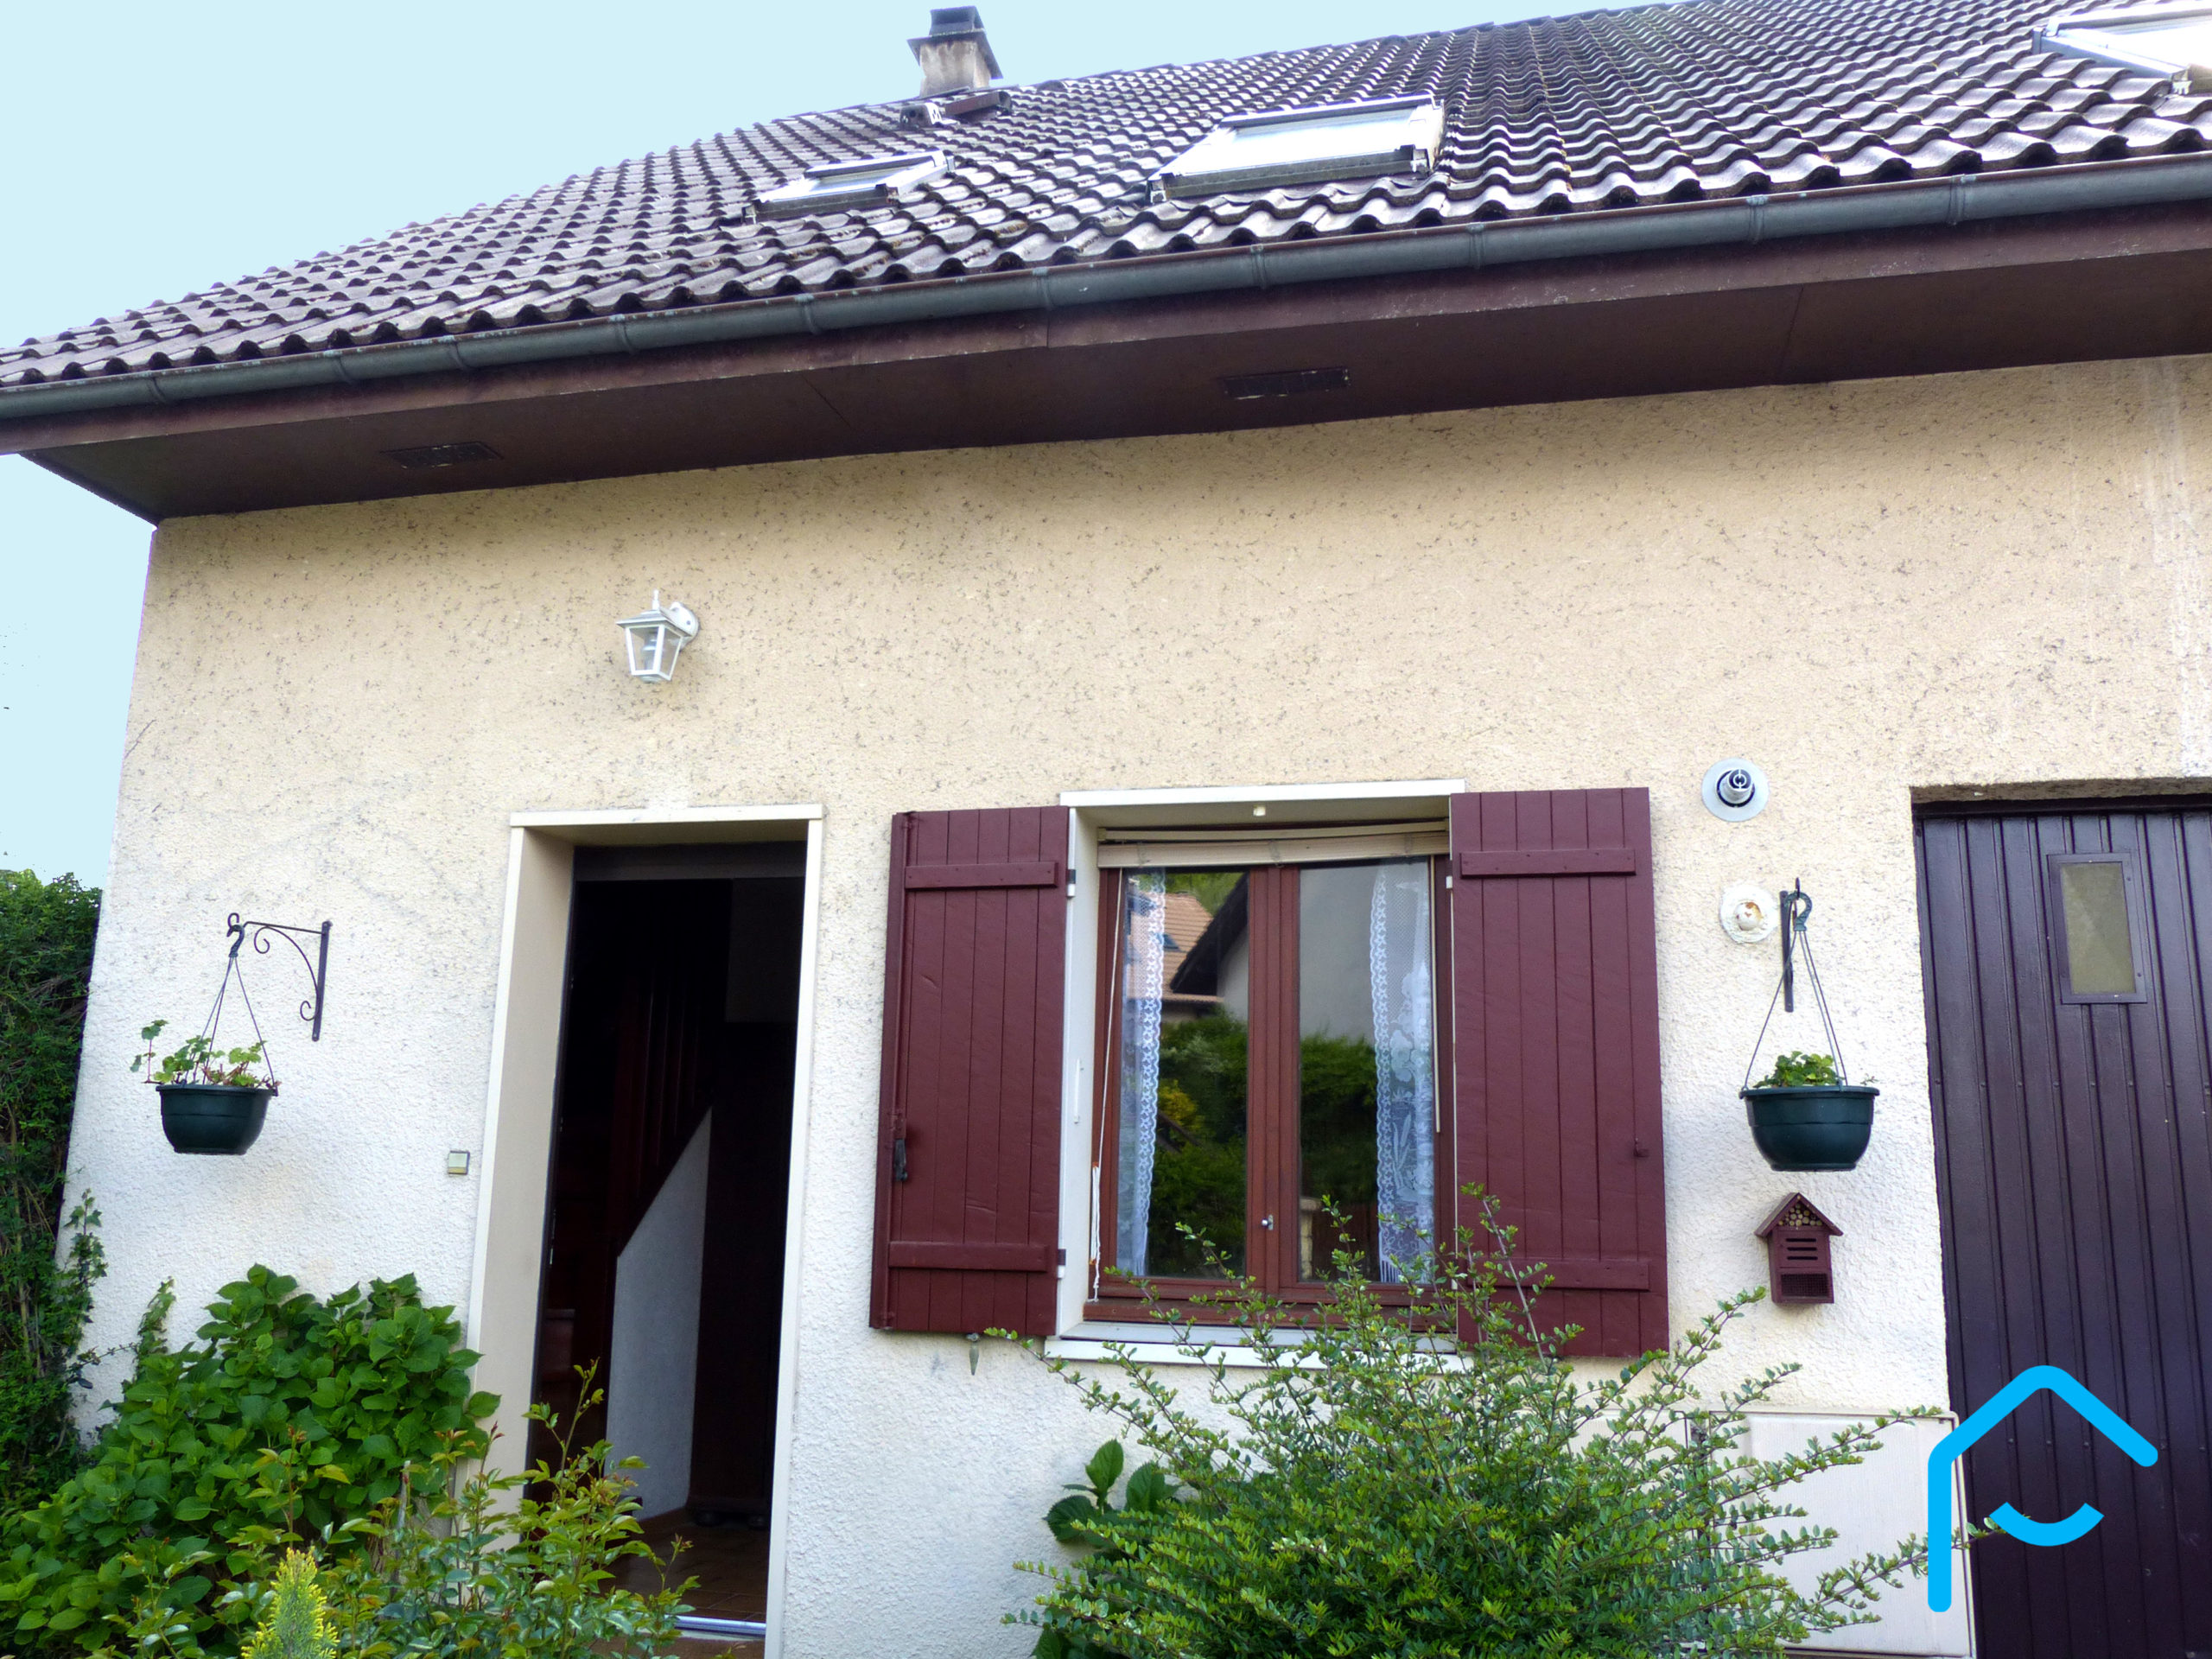 A vendre maison Chambéry Savoie jardin 3 chambres garage vue 5